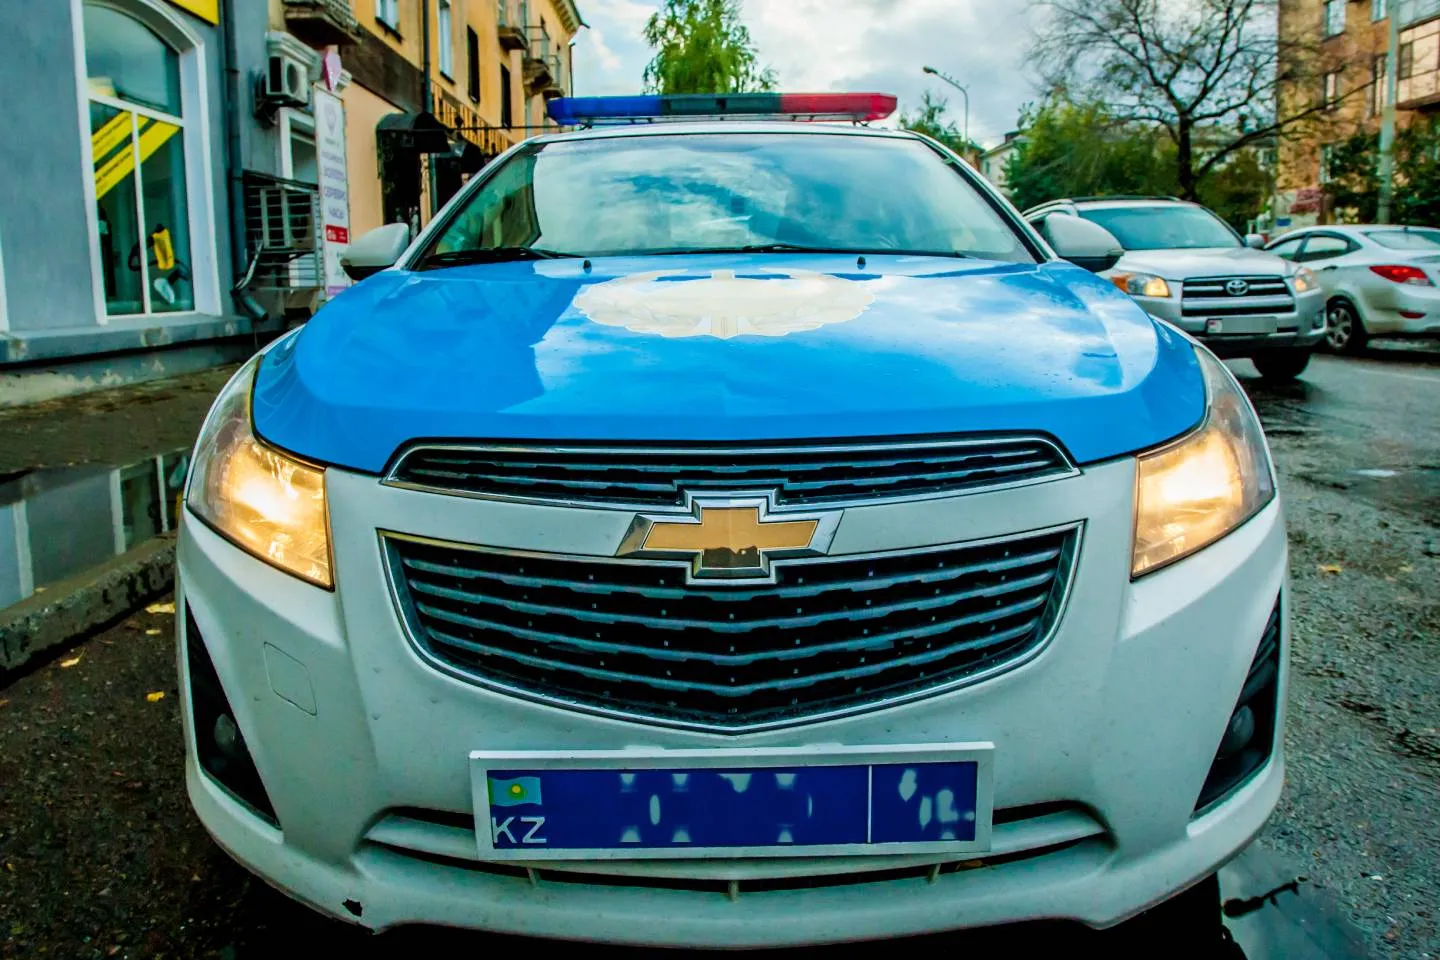 Происшествия в Казахстане и мире / Криминальные новости / Заплатить за "суету" в городе придется пьяному водителю из Павлодара